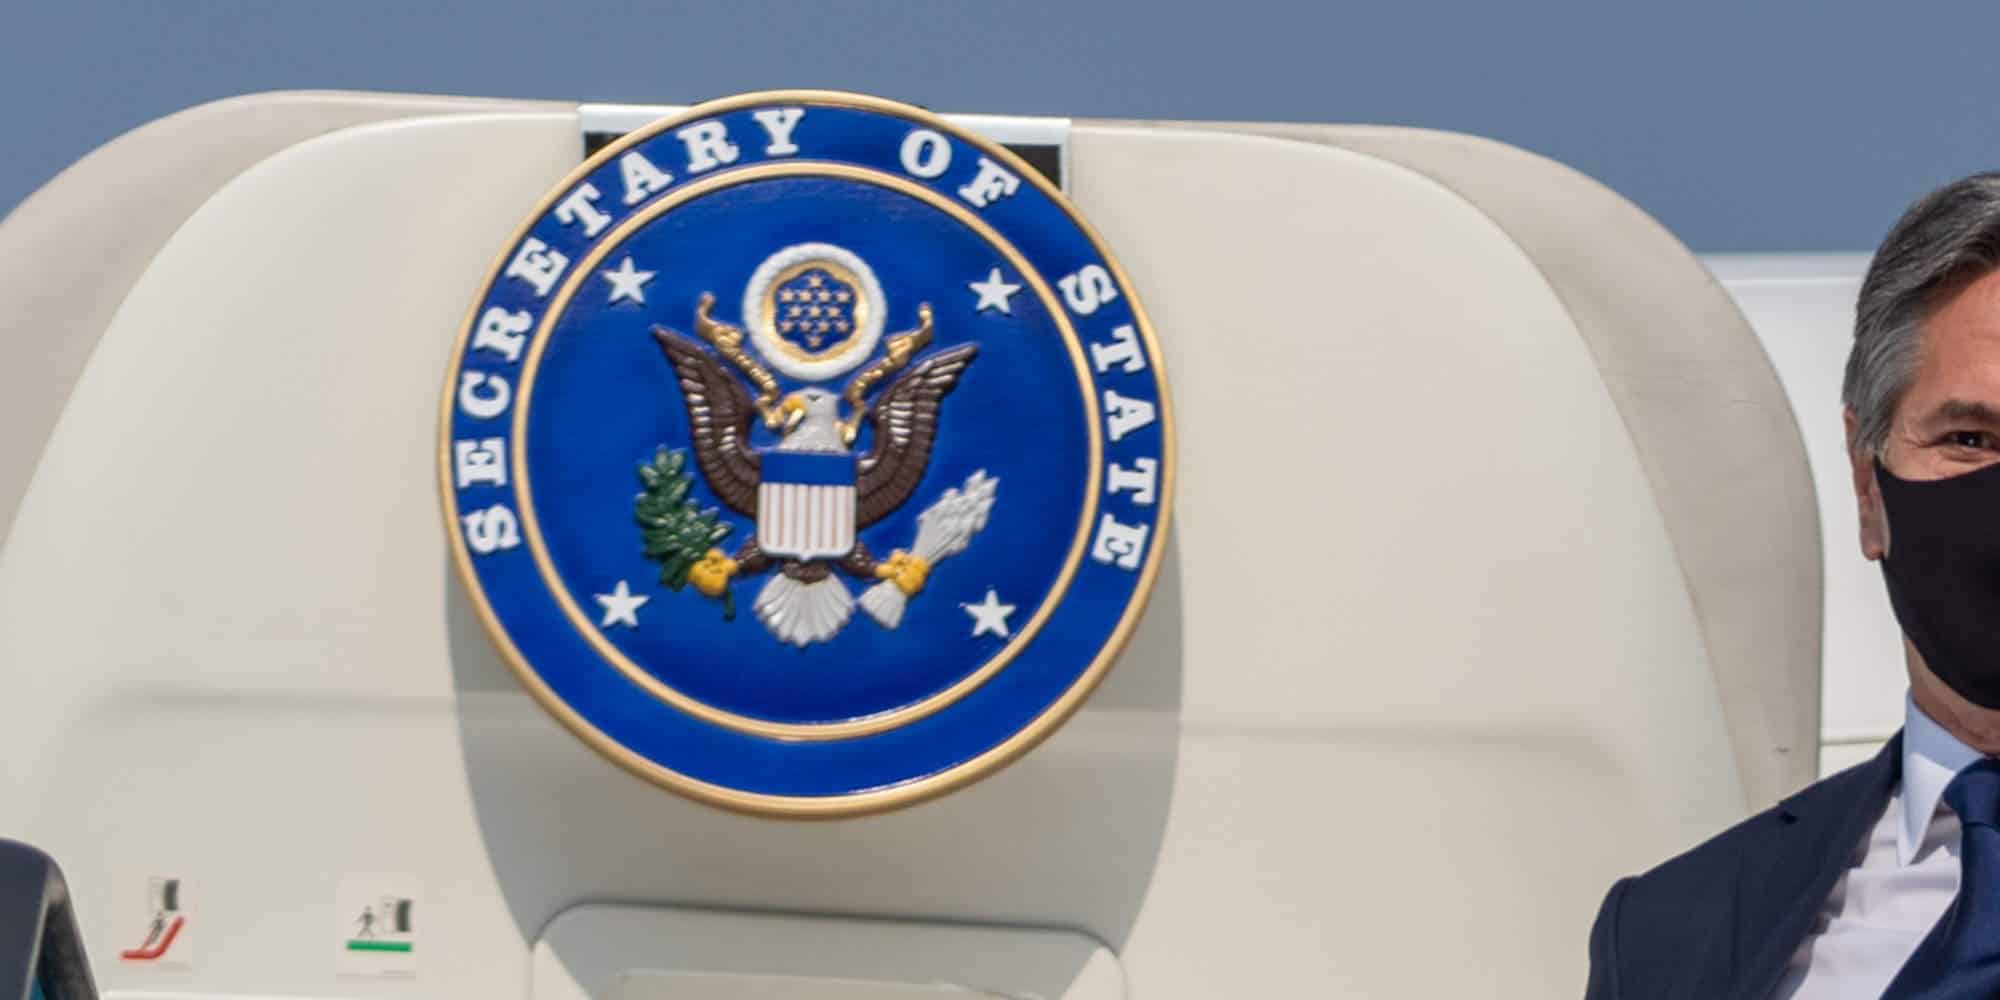 Το λογότυπο του State Department των ΗΠΑ